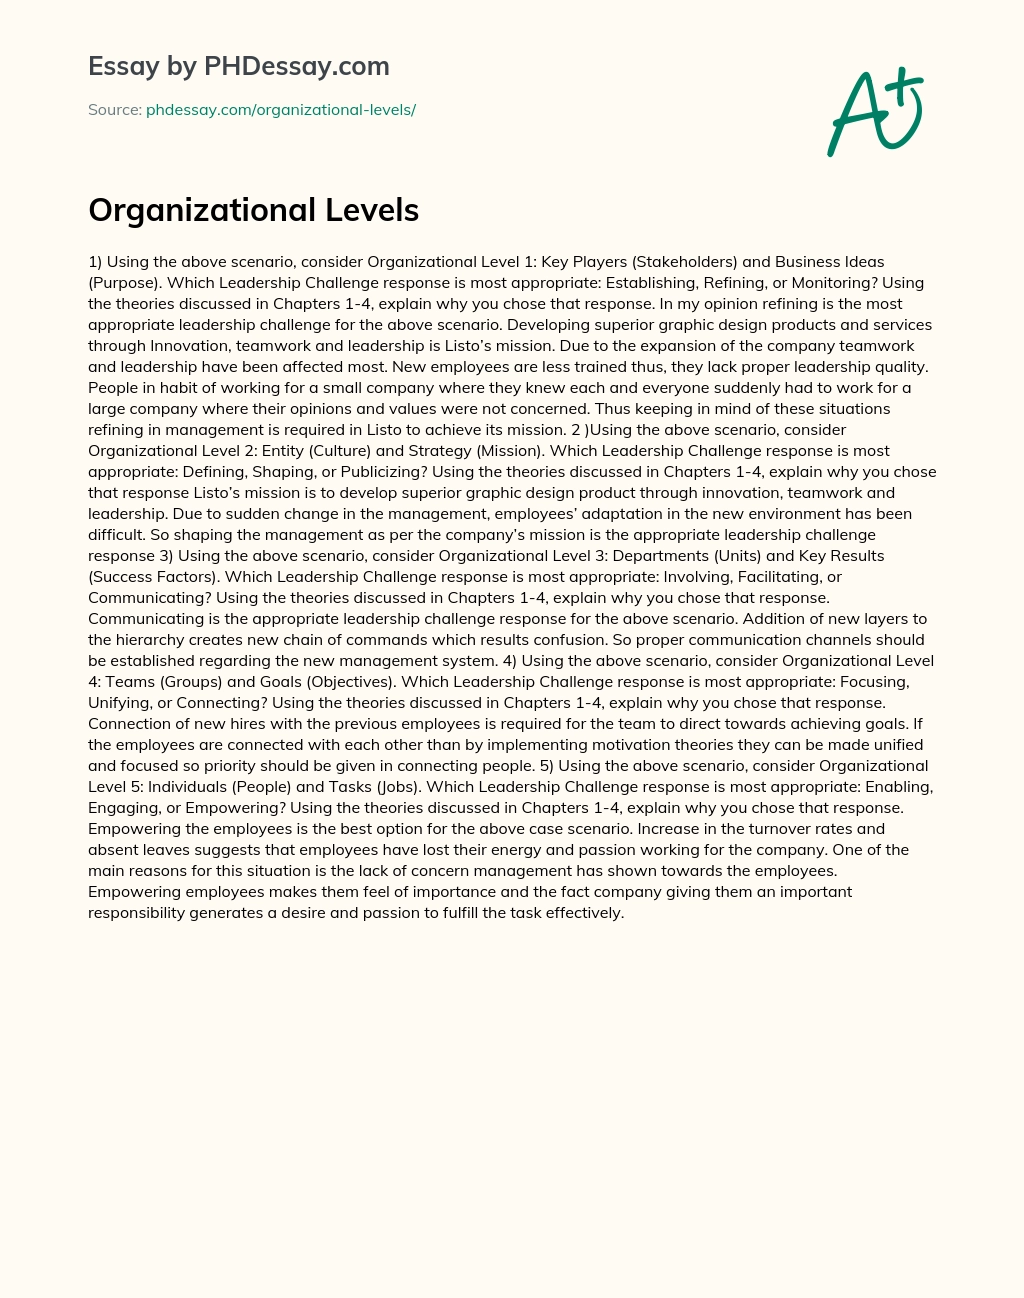 Organizational Levels essay